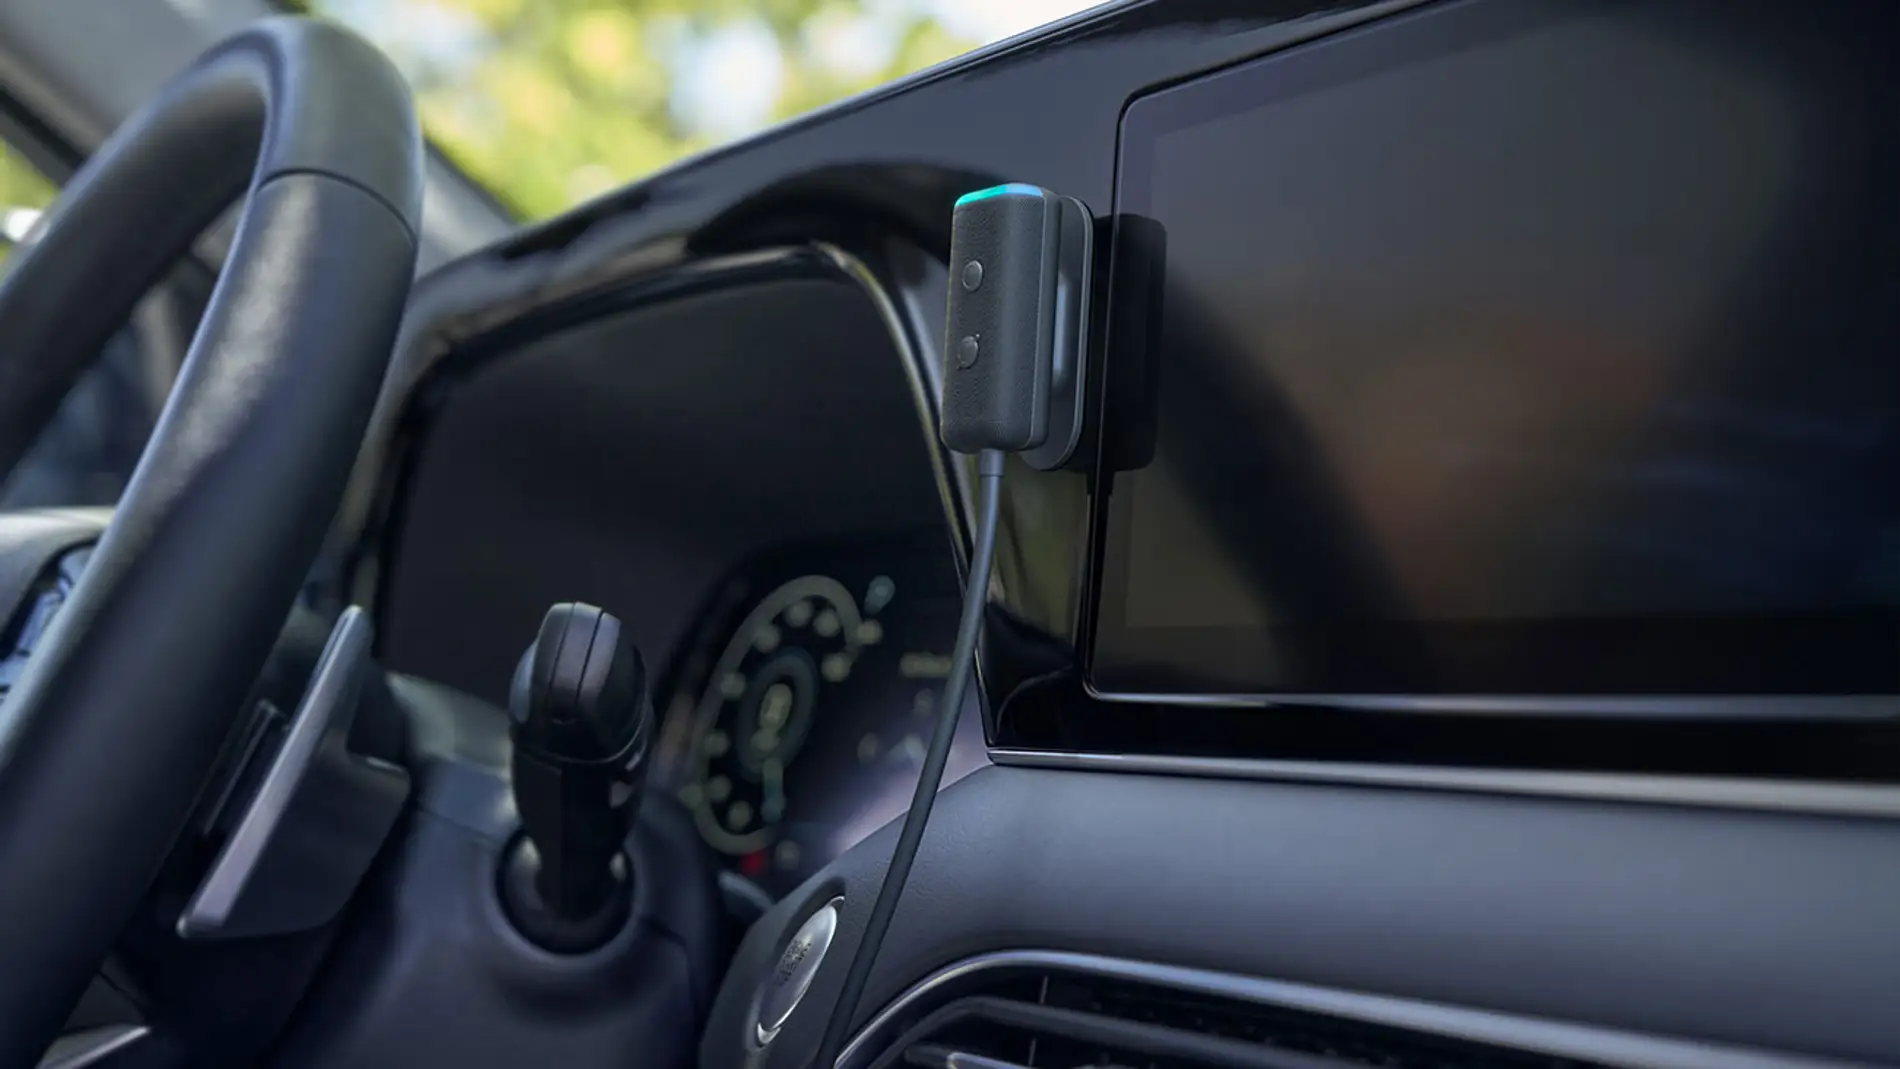 Echo Auto te permitirá tener Alexa en cualquier auto